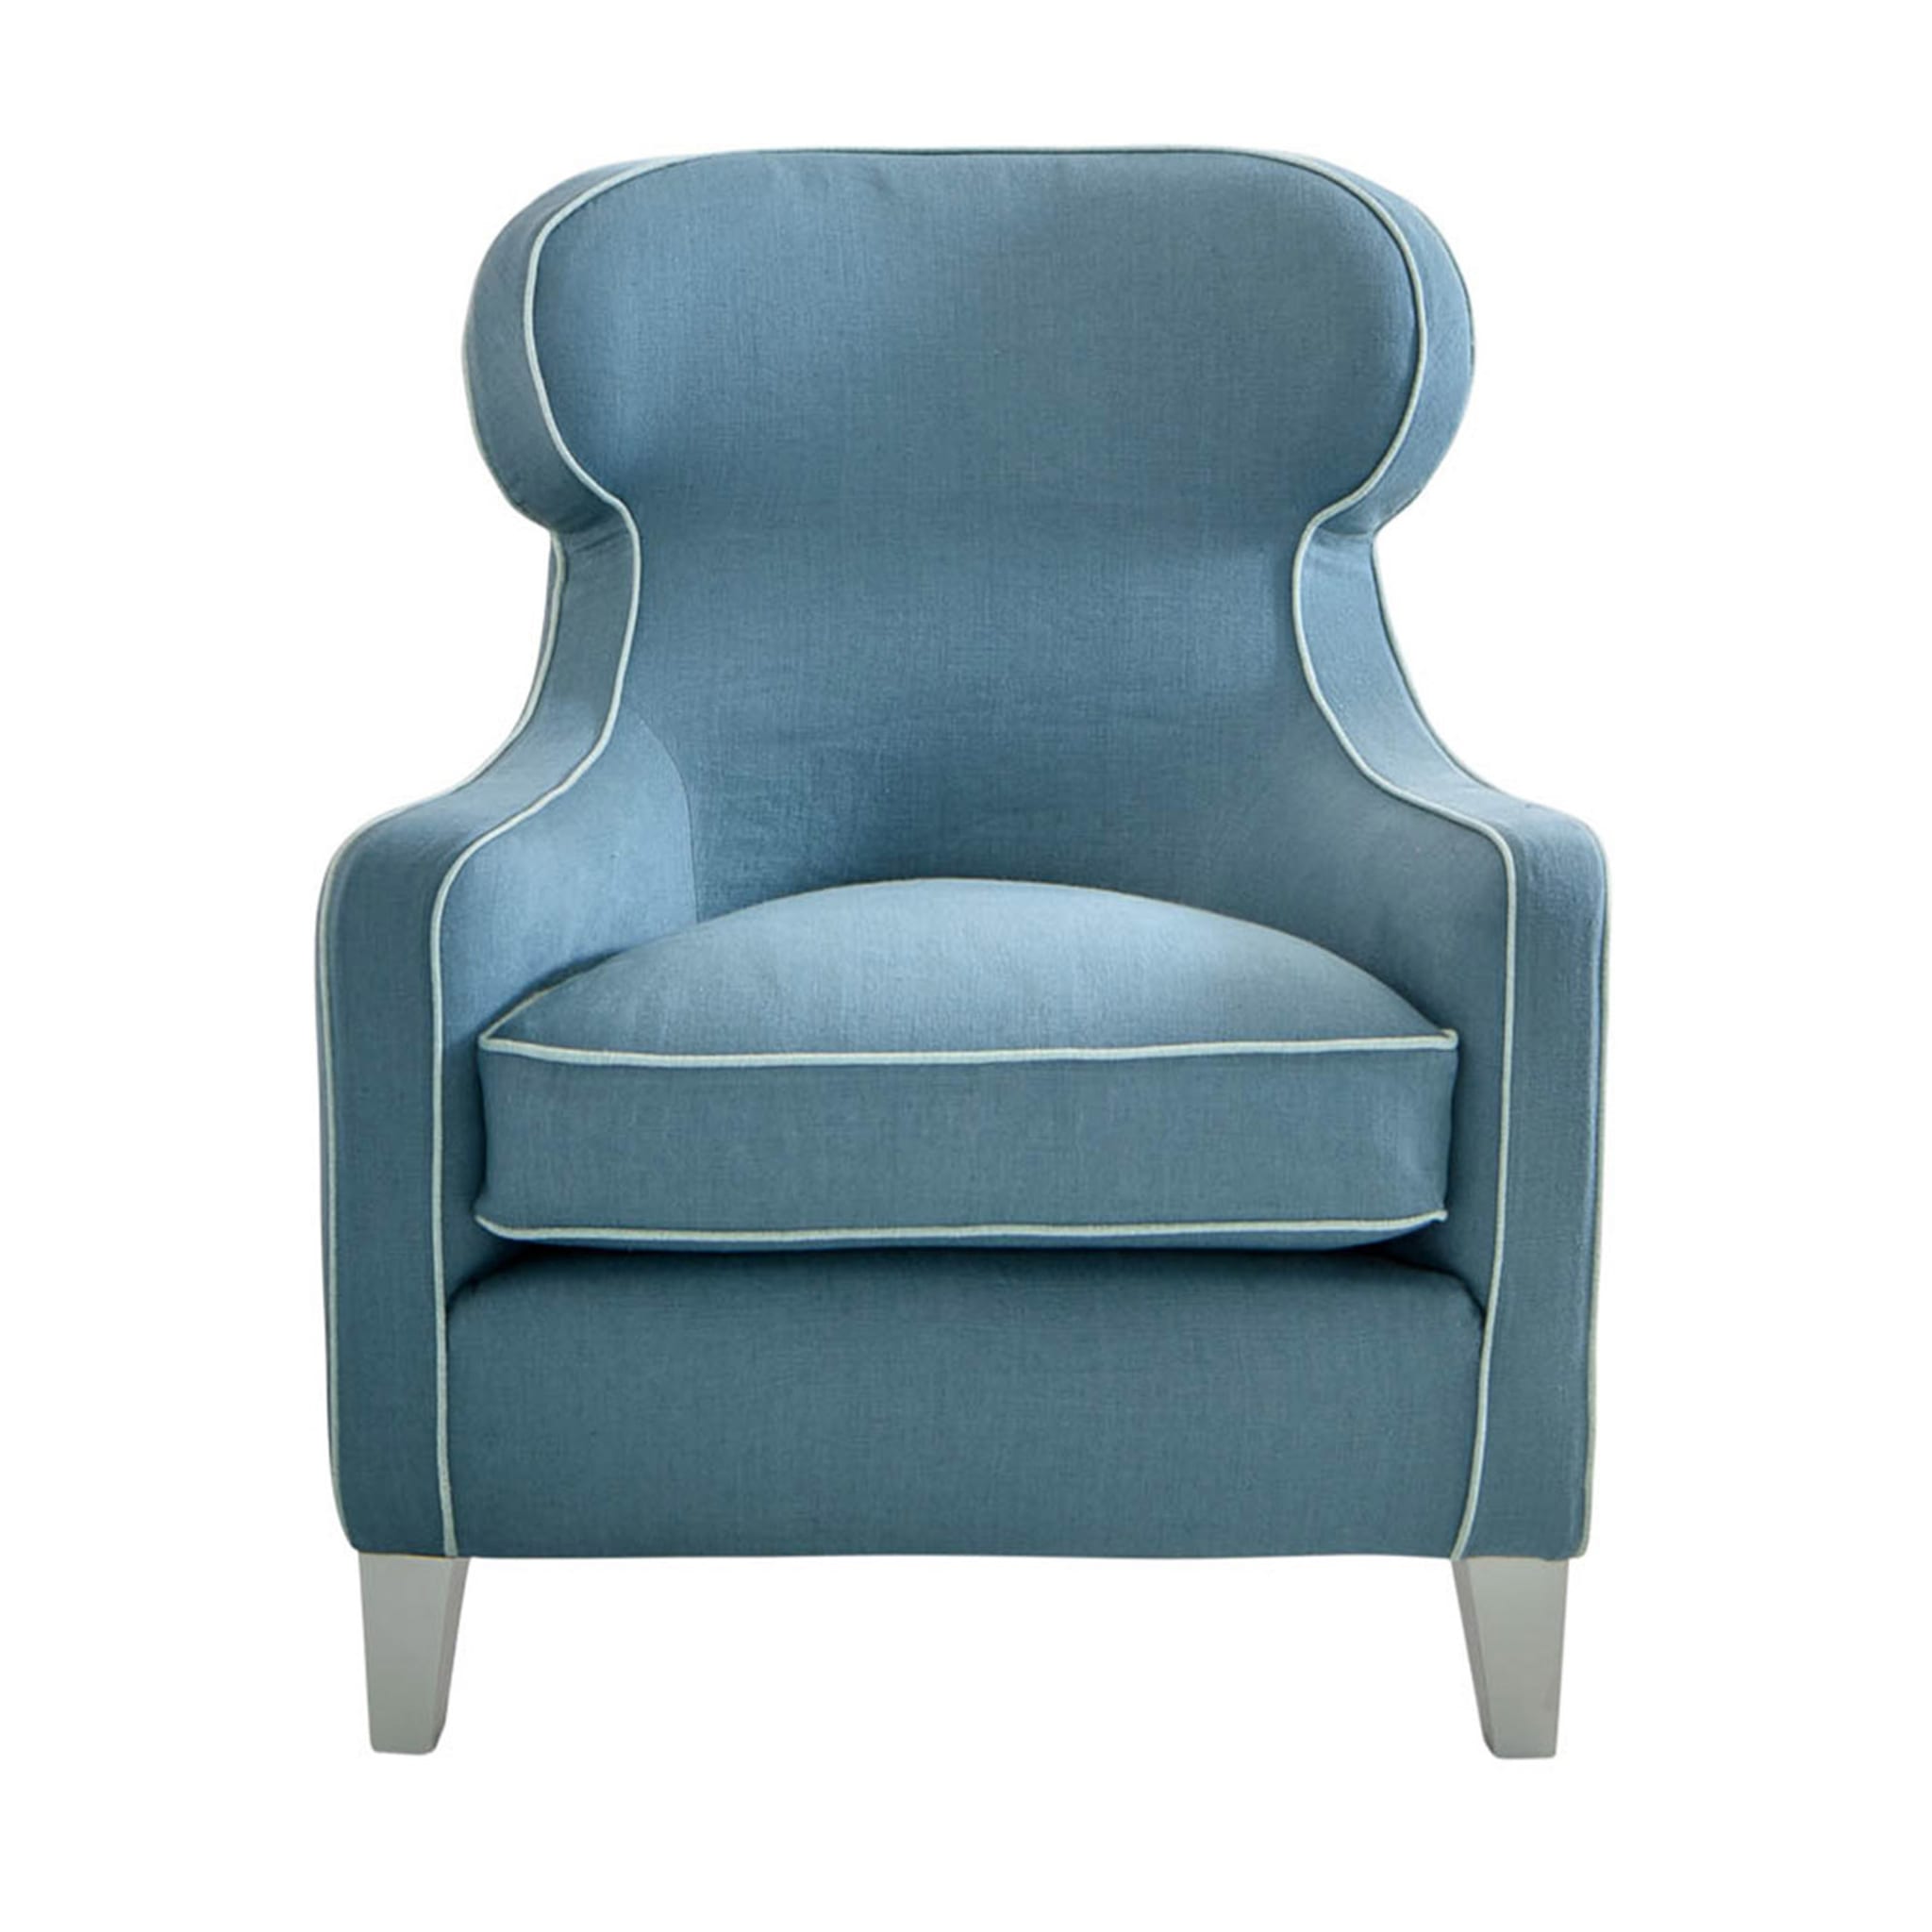 Agata Light Blue Armchair - Main view